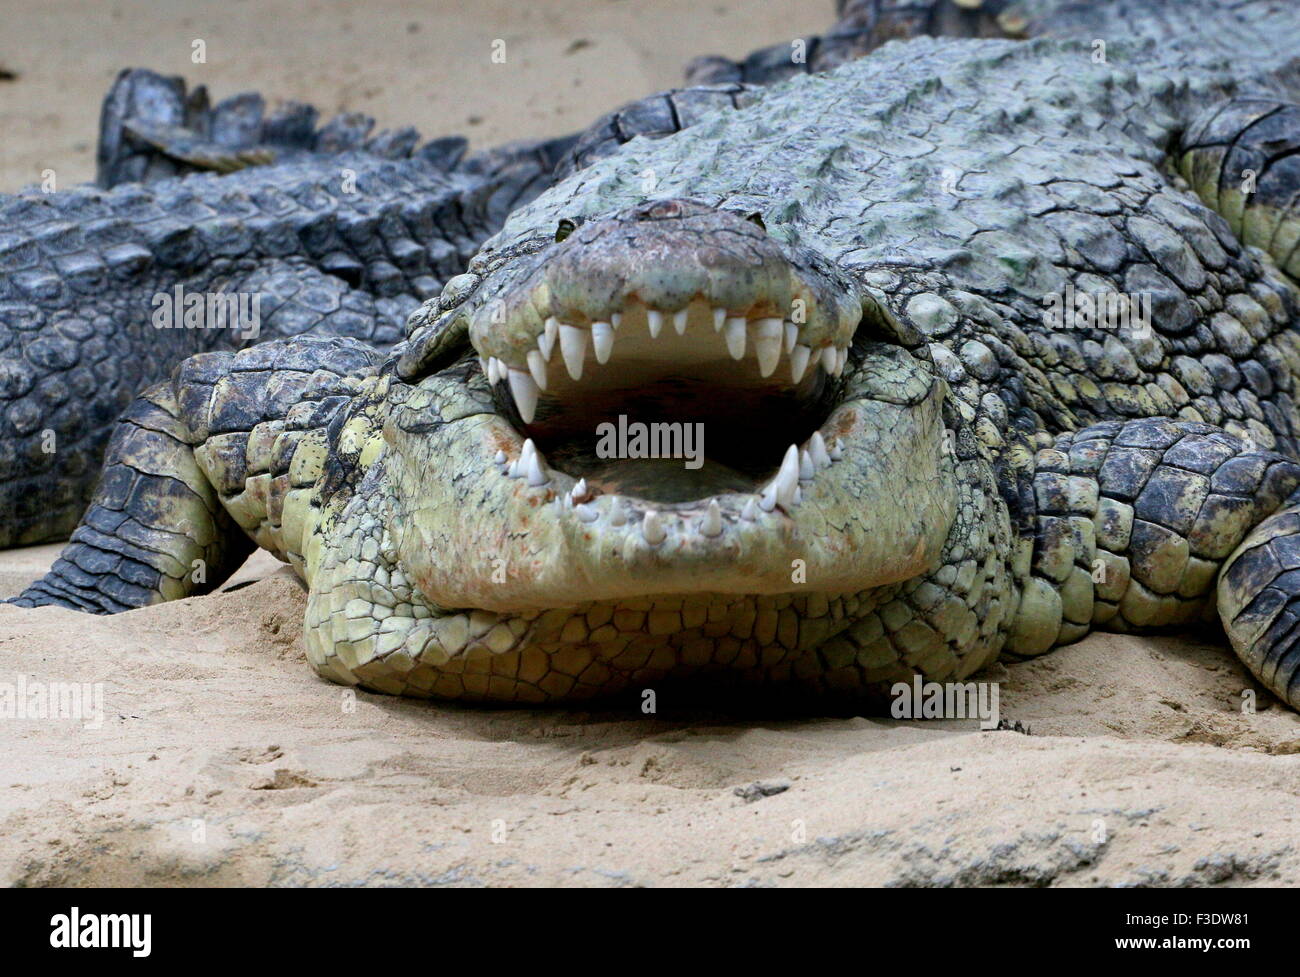 Le crocodile du Nil africains mature (Crocodylus niloticus) au soleil, la bouche grande ouverte Banque D'Images